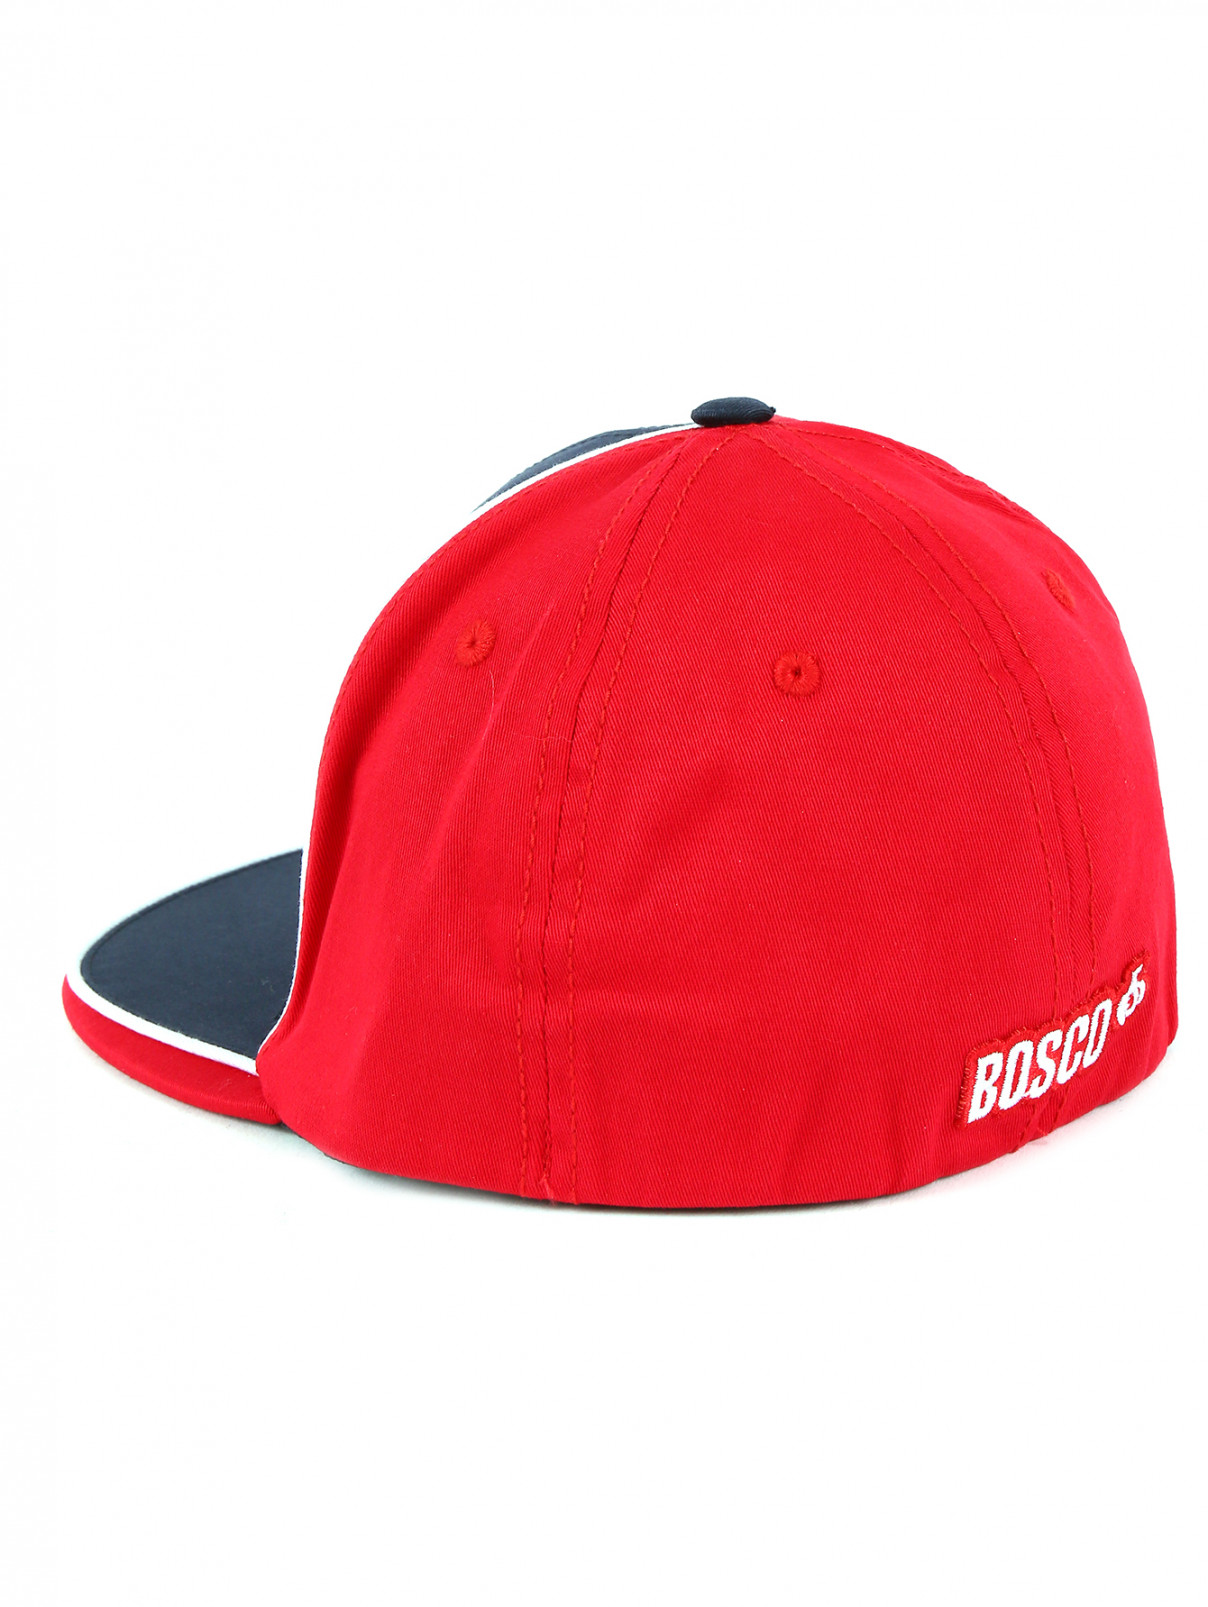 Бейсболка из хлопка с принтом BOSCO  –  Обтравка2  – Цвет:  Красный